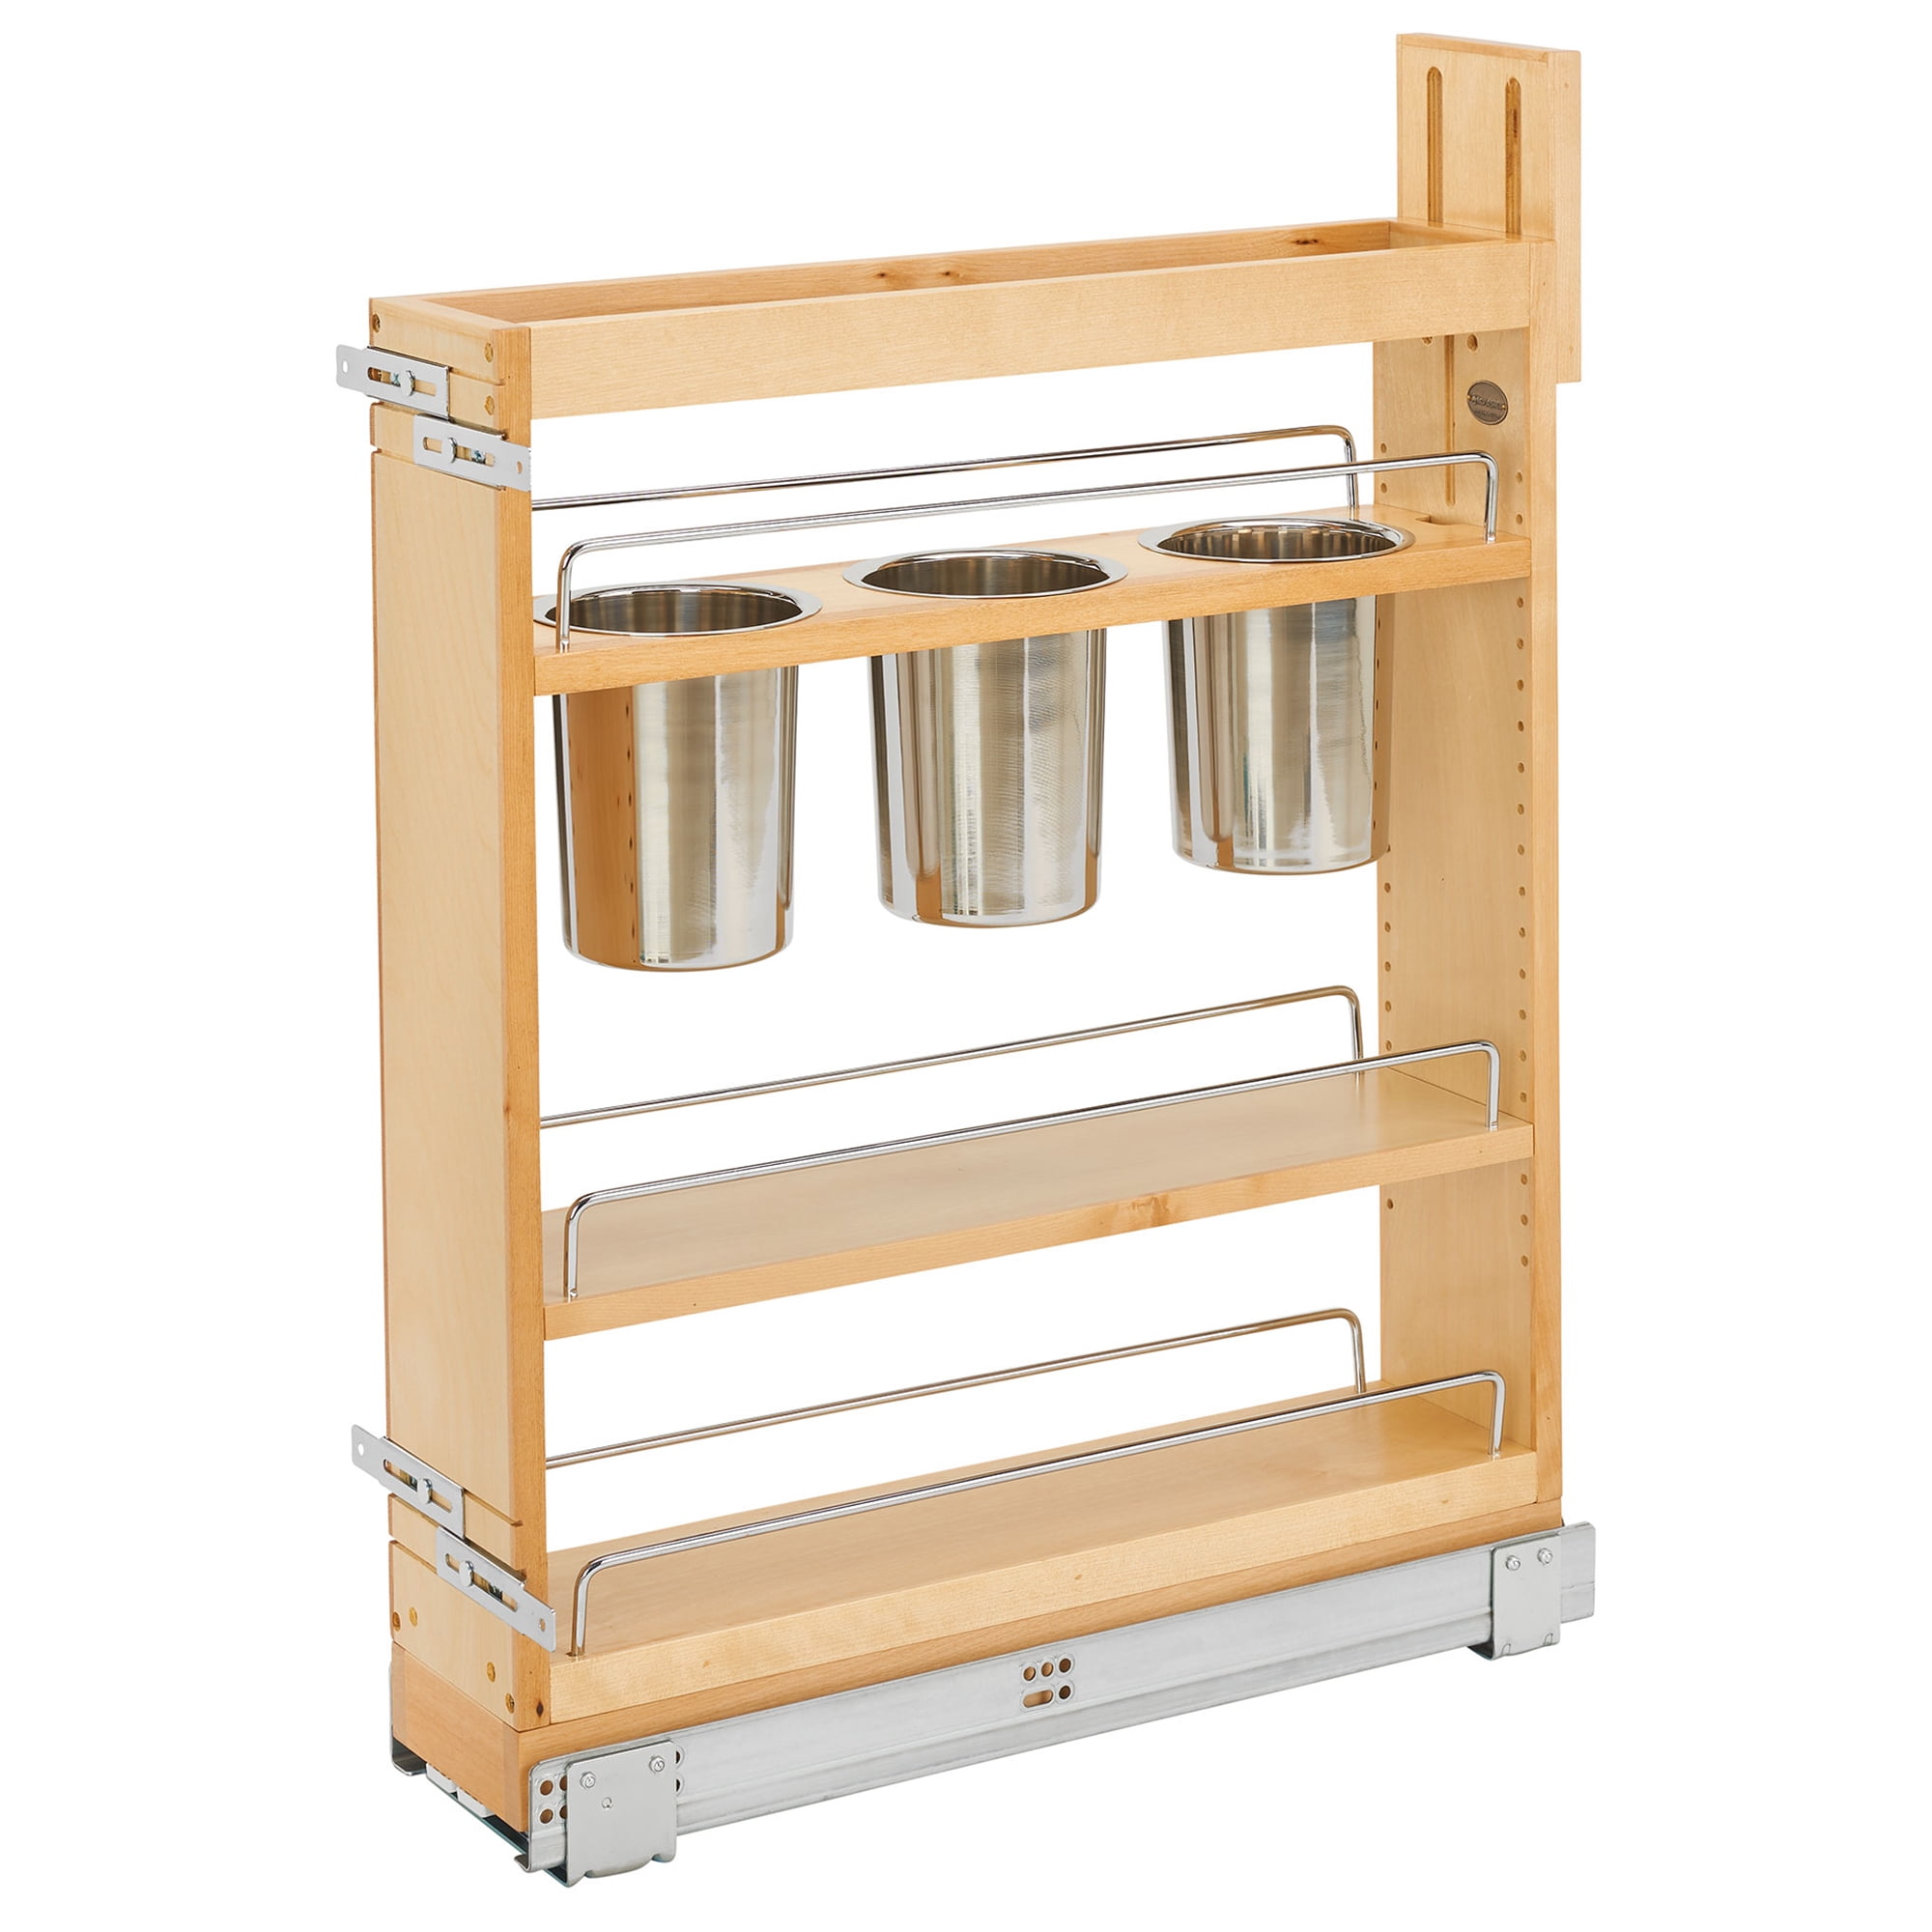 Rev-A-Shelf Five Shelf Kitchen Door Storage Sets